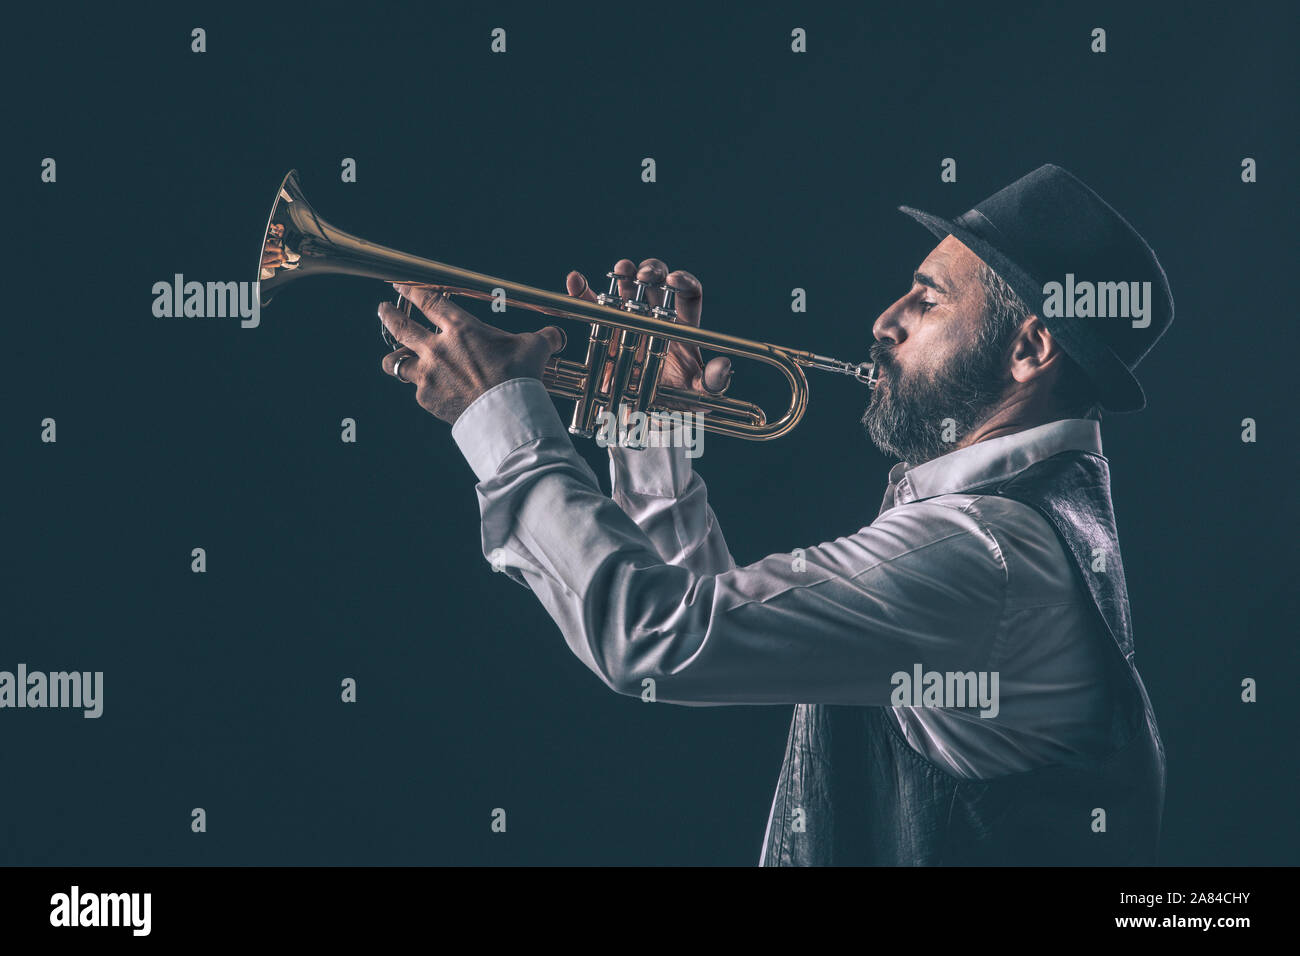 Profil anzeigen von einem Jazz Trompeter mit Bart und Hut. schwarzen Hintergrund. Stockfoto